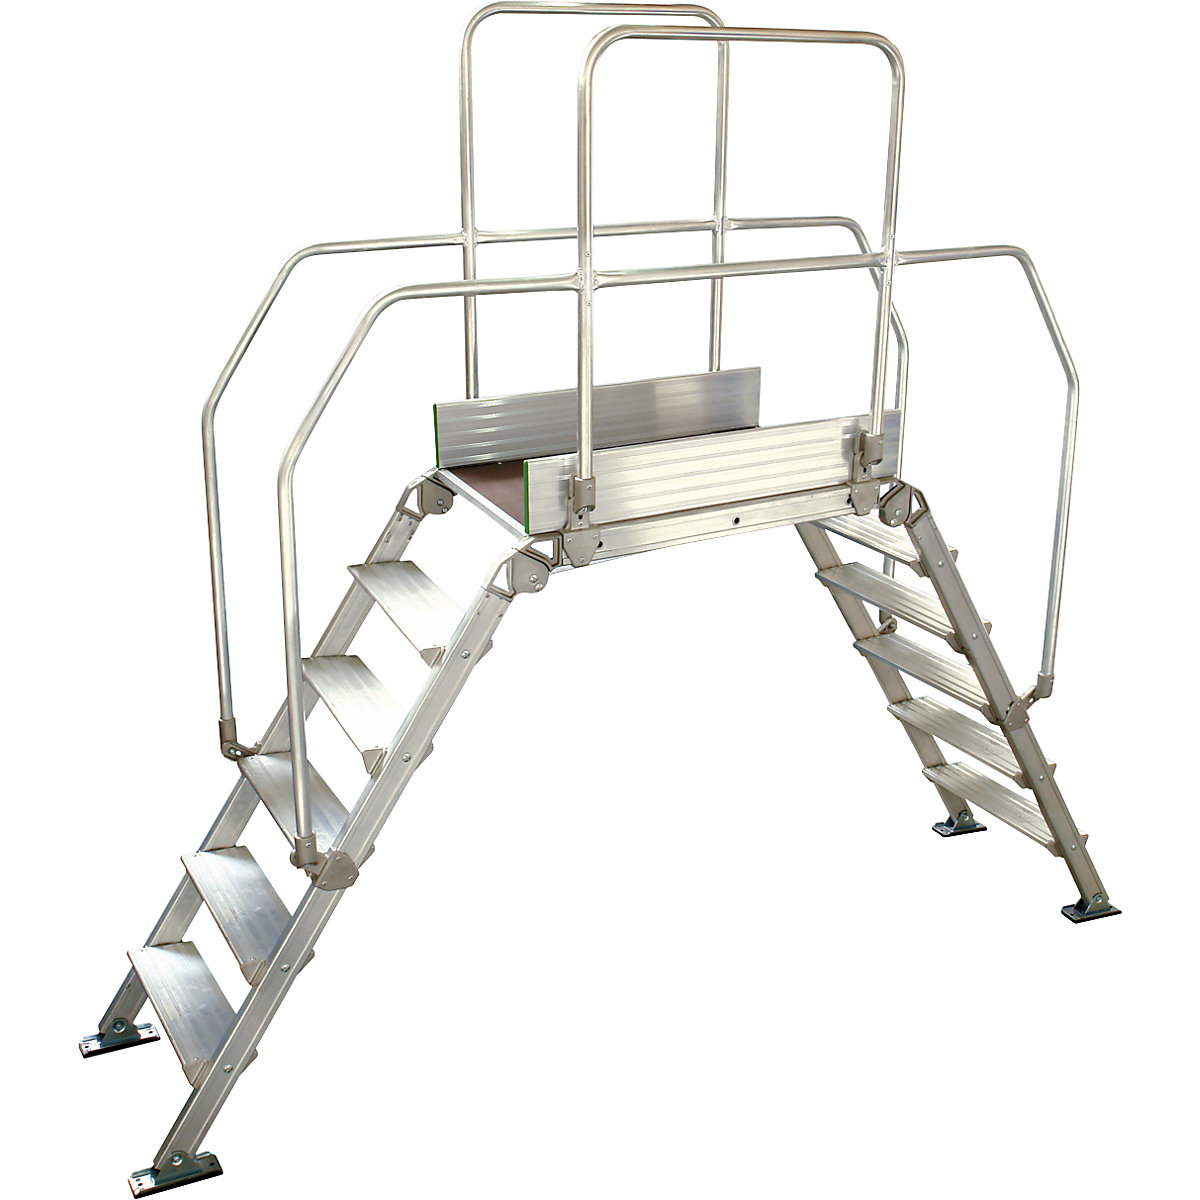 Aluminium ladderbrug, totale belasting 200 kg, 6 treden, platform 900 x 530 mm-6